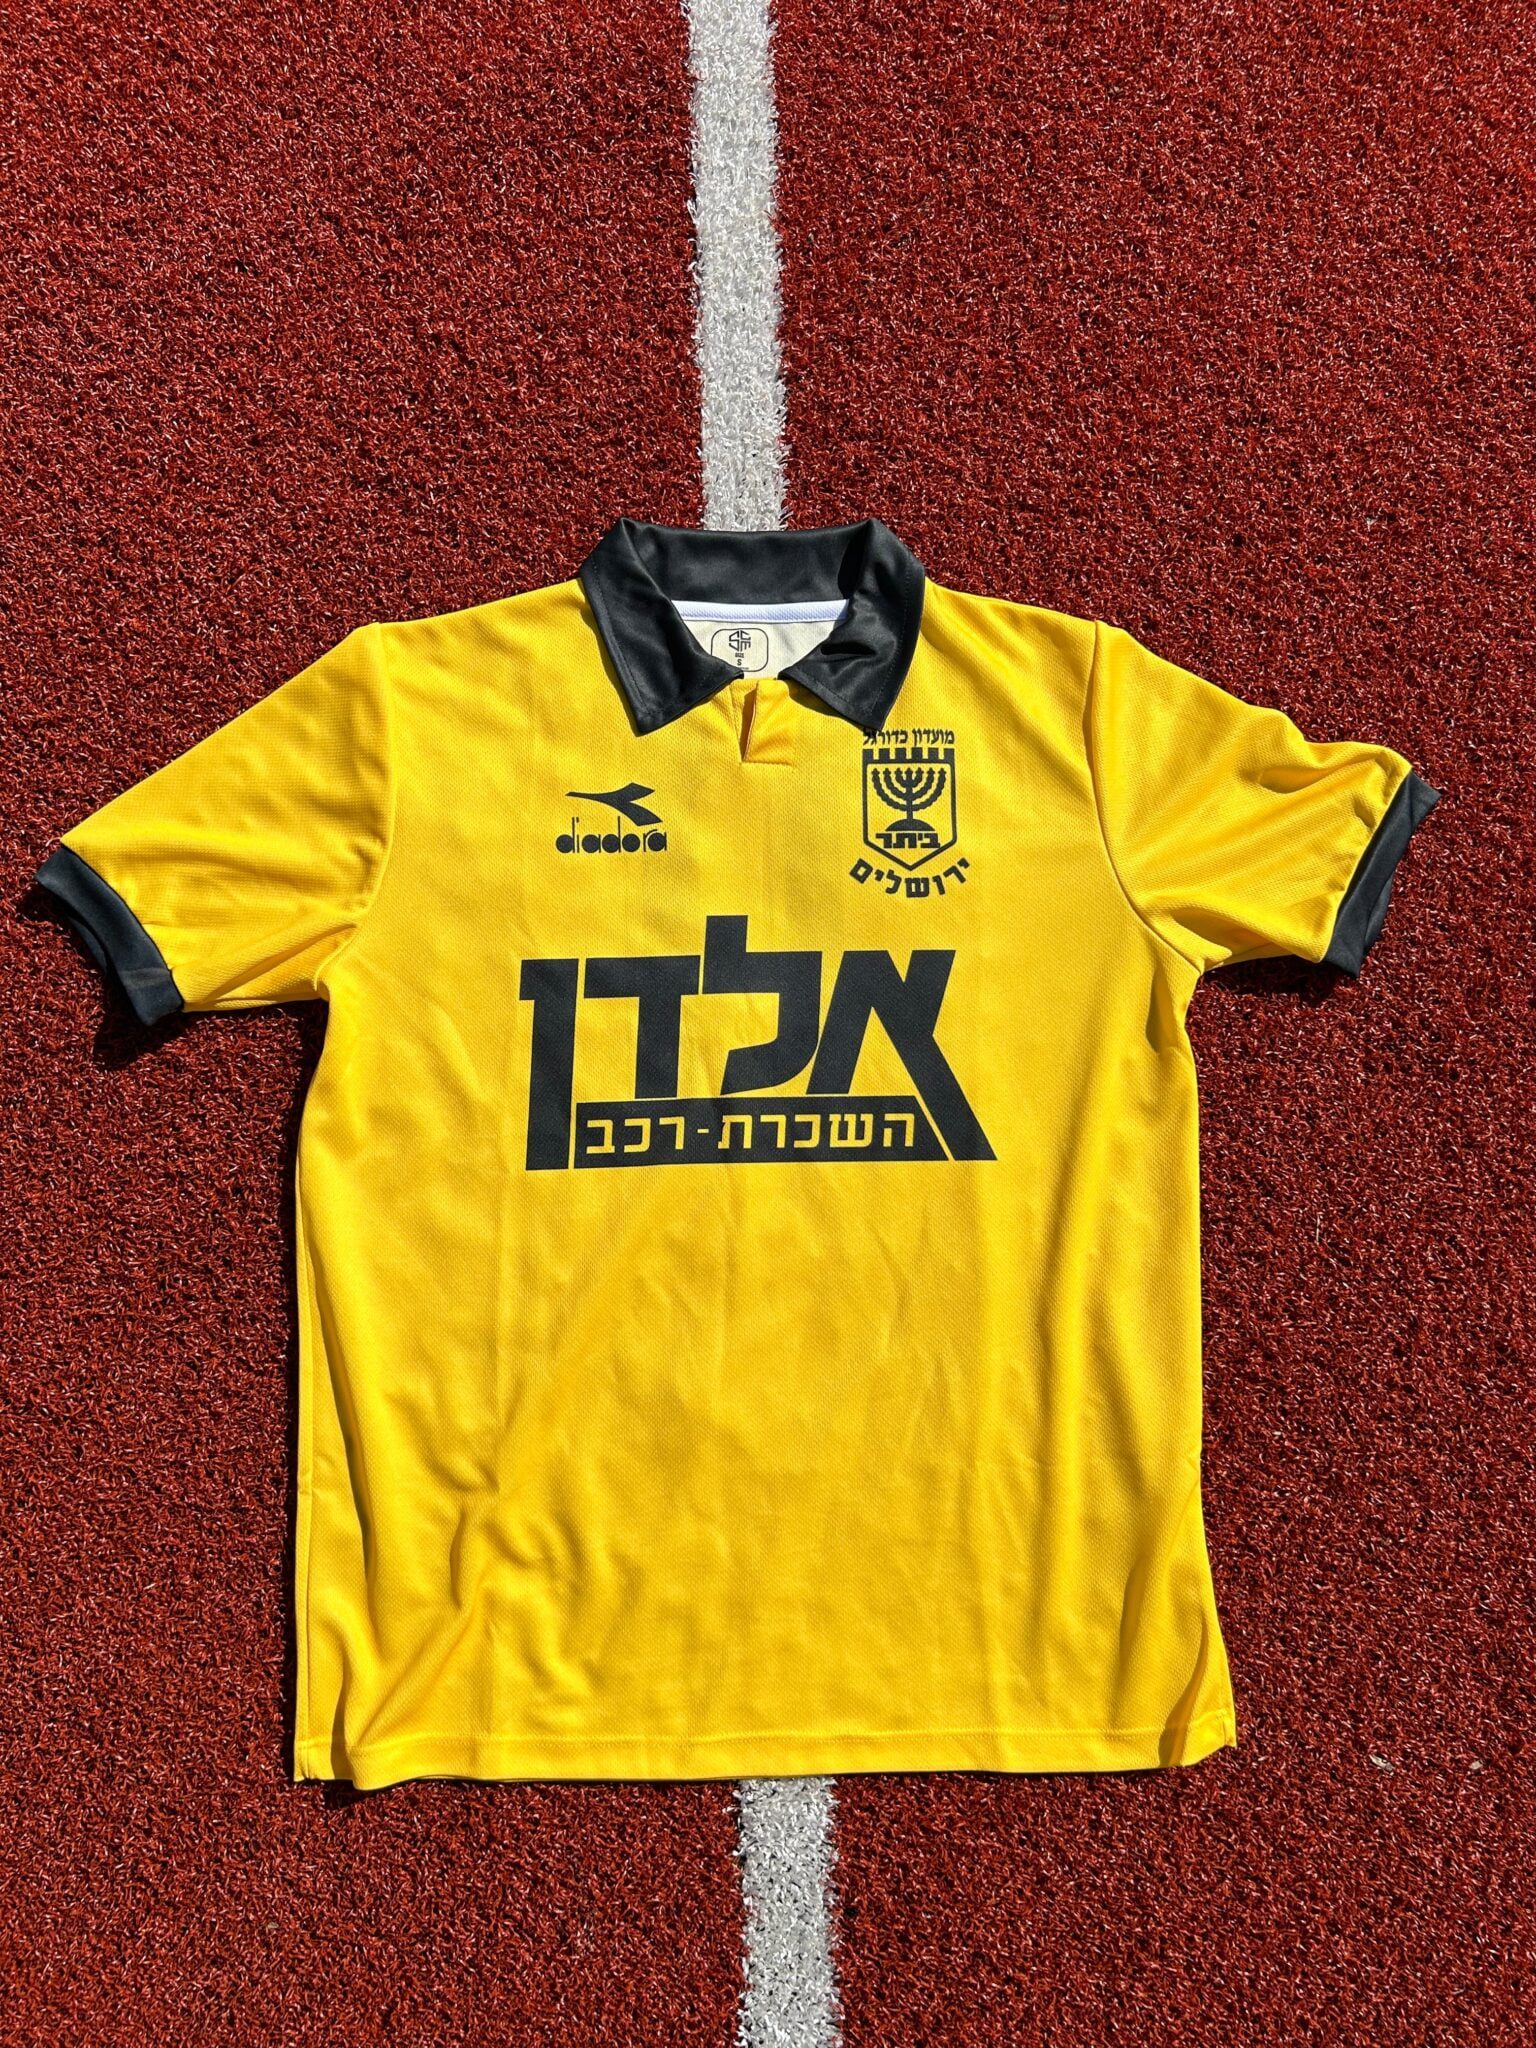 Beitar Jerusalem Football Jersey 1993/1994 Retro ביתר ירושלים : The Menorah - Sport Club Memories